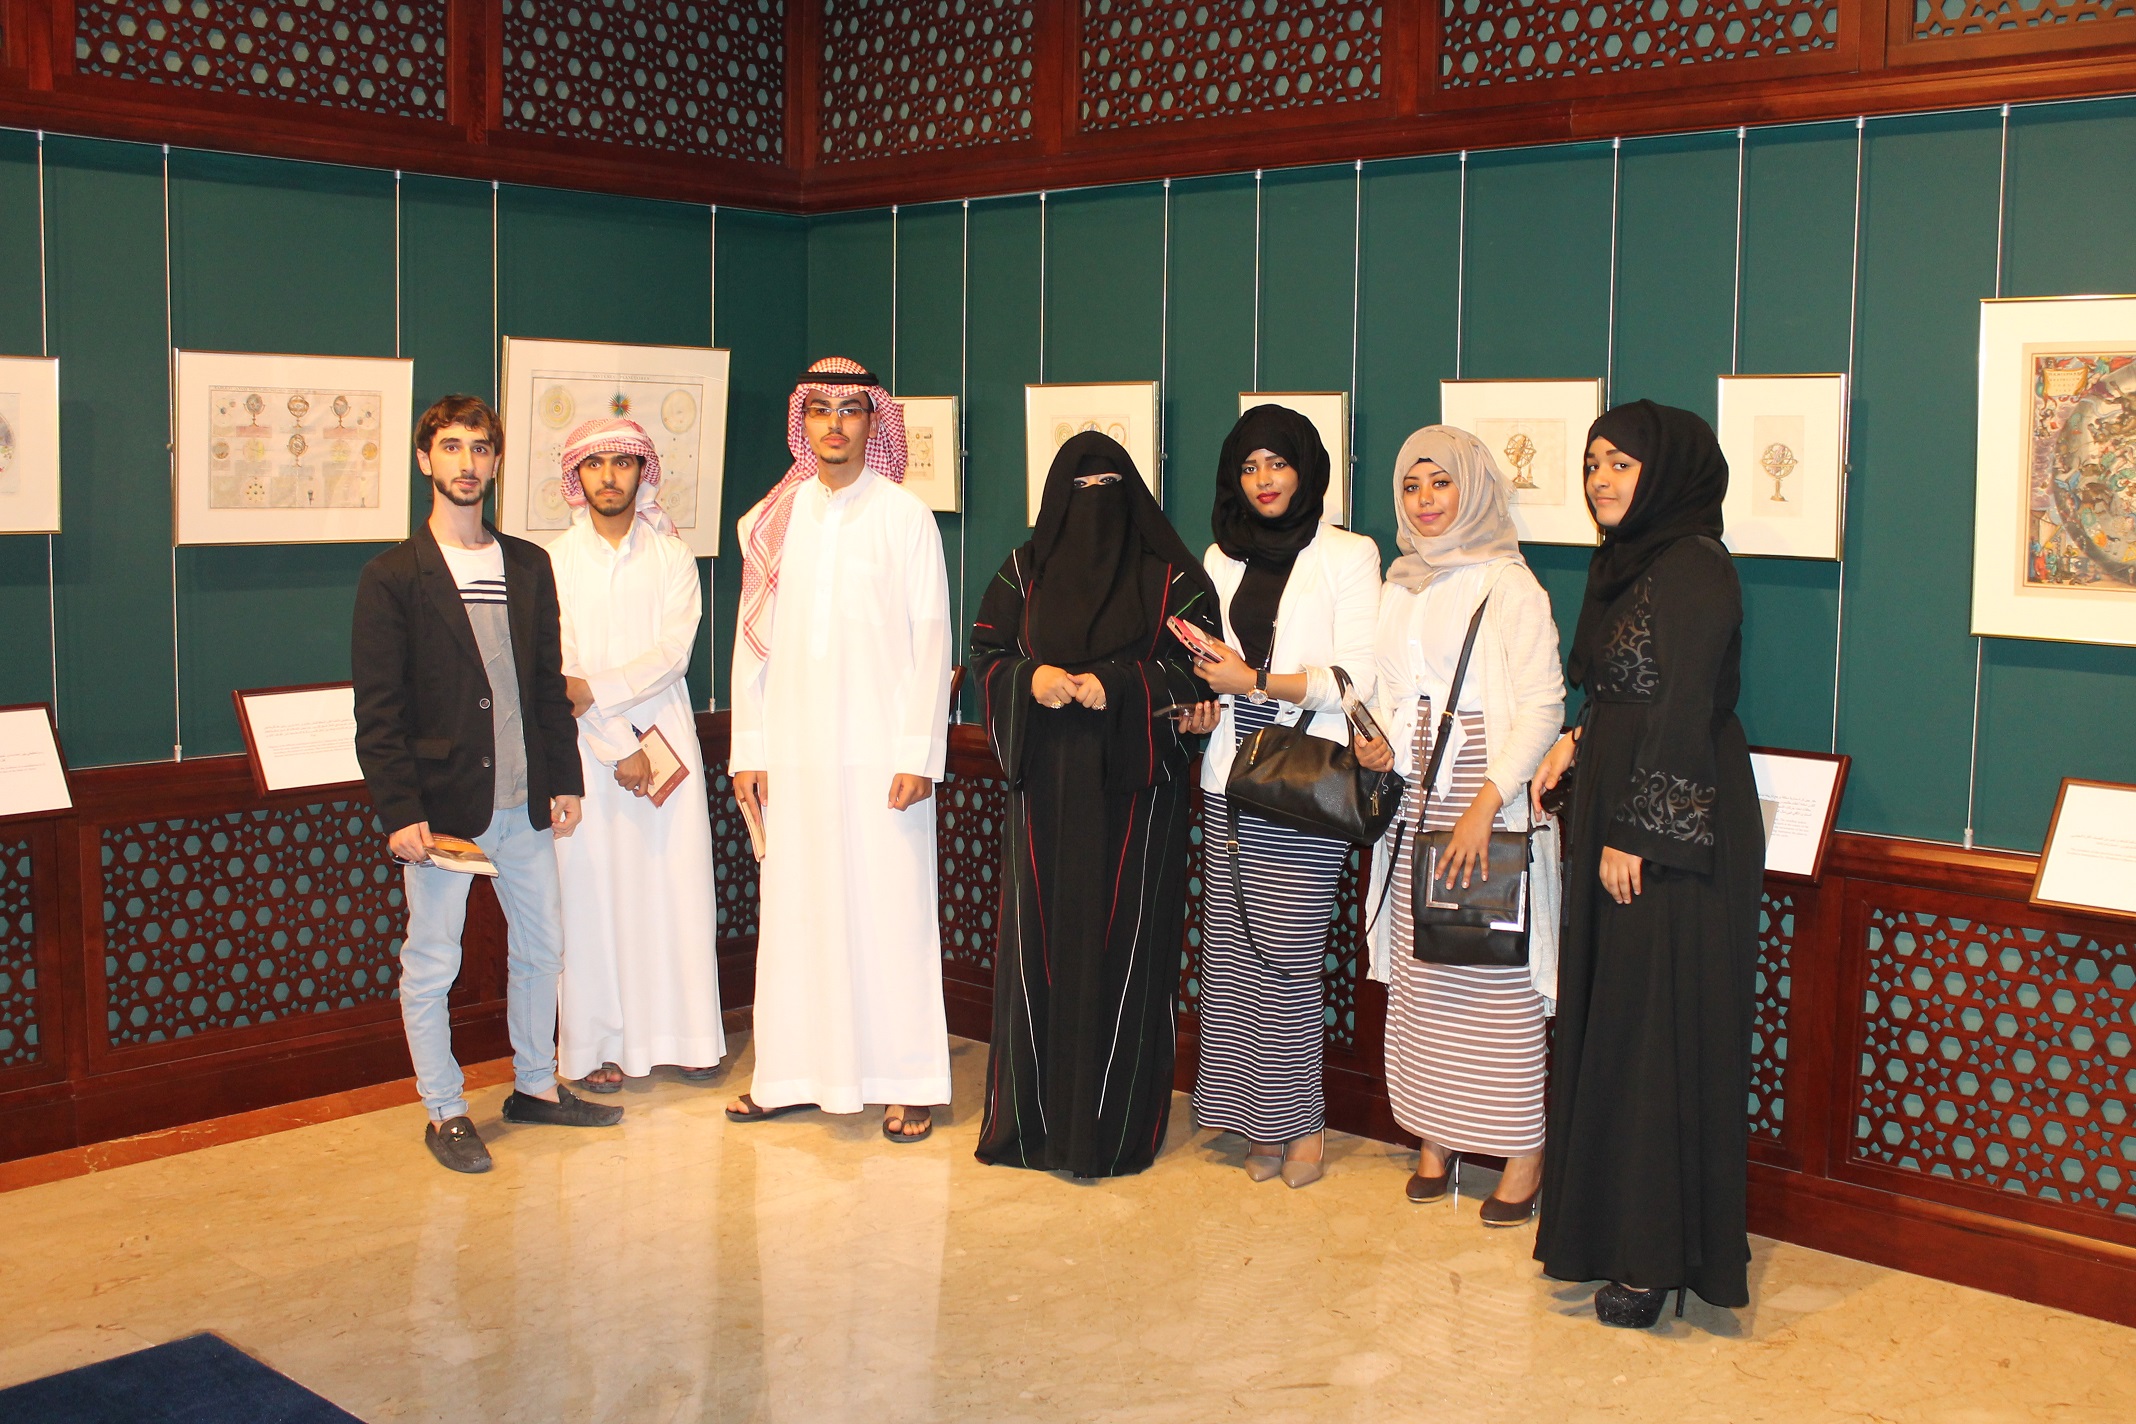  زيارة طلاب جامعة العين لدارة الشيخ الدكتور سلطان القاسمي 